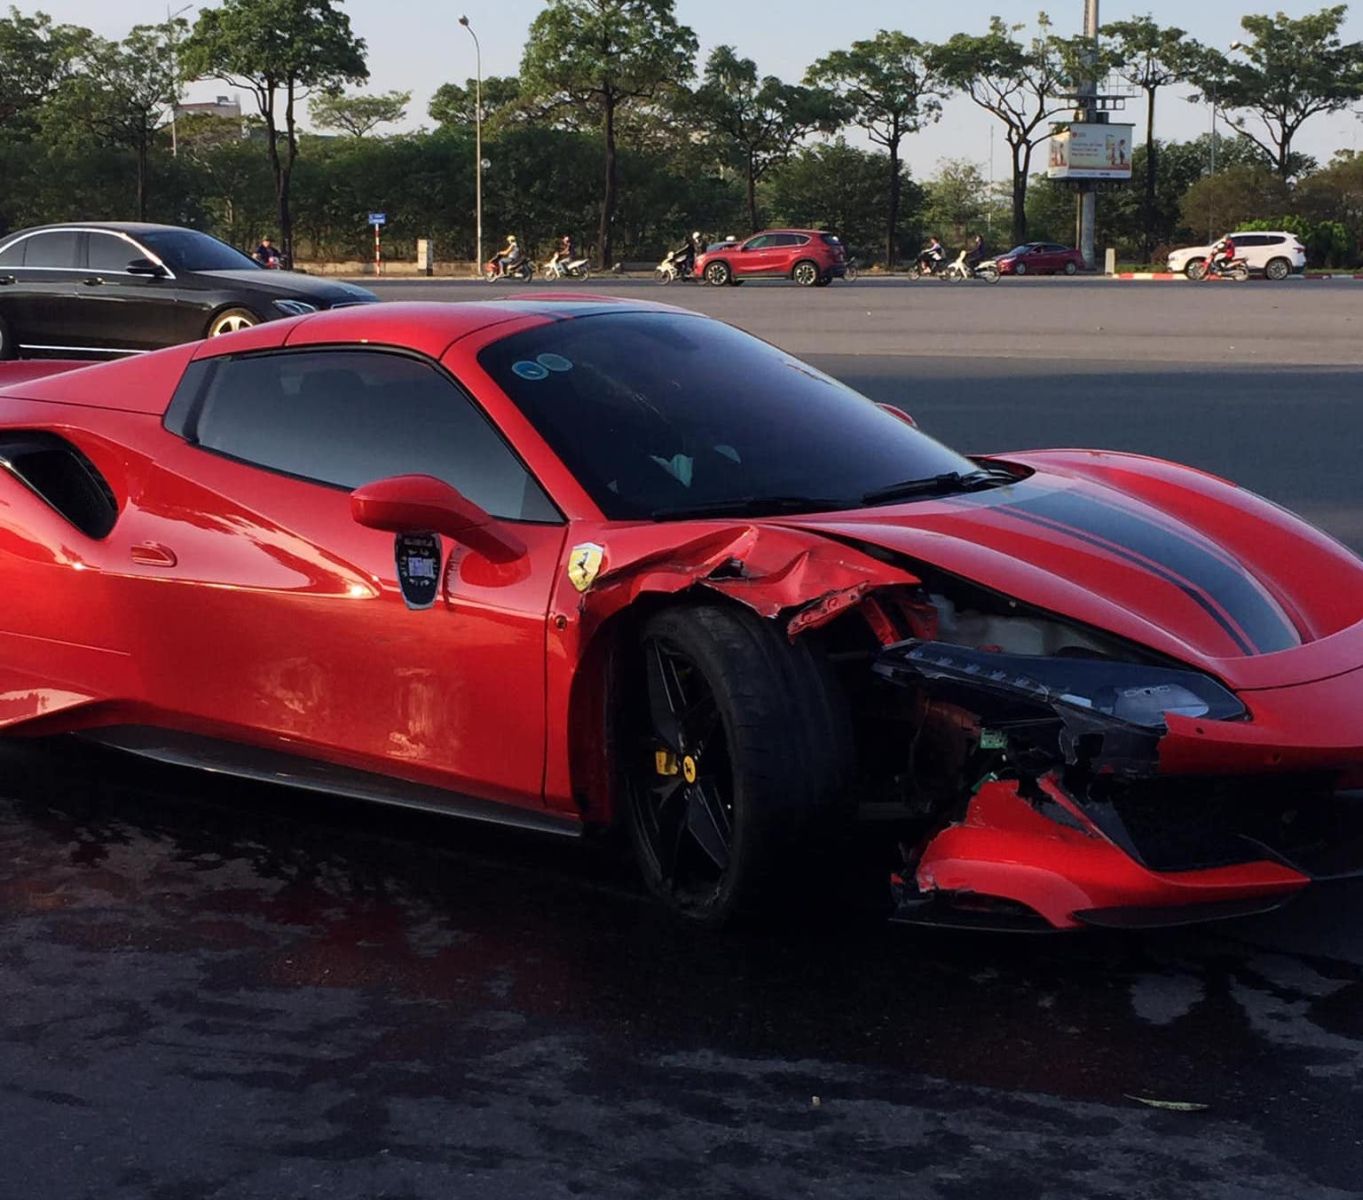  Chiếc siêu xe Ferrari 488 Pista Spider trong vụ tai nạn rạng sáng ngày 31/10 với phần đầu bên ghế phụ vỡ nát. Ảnh: Đặng Đức Long